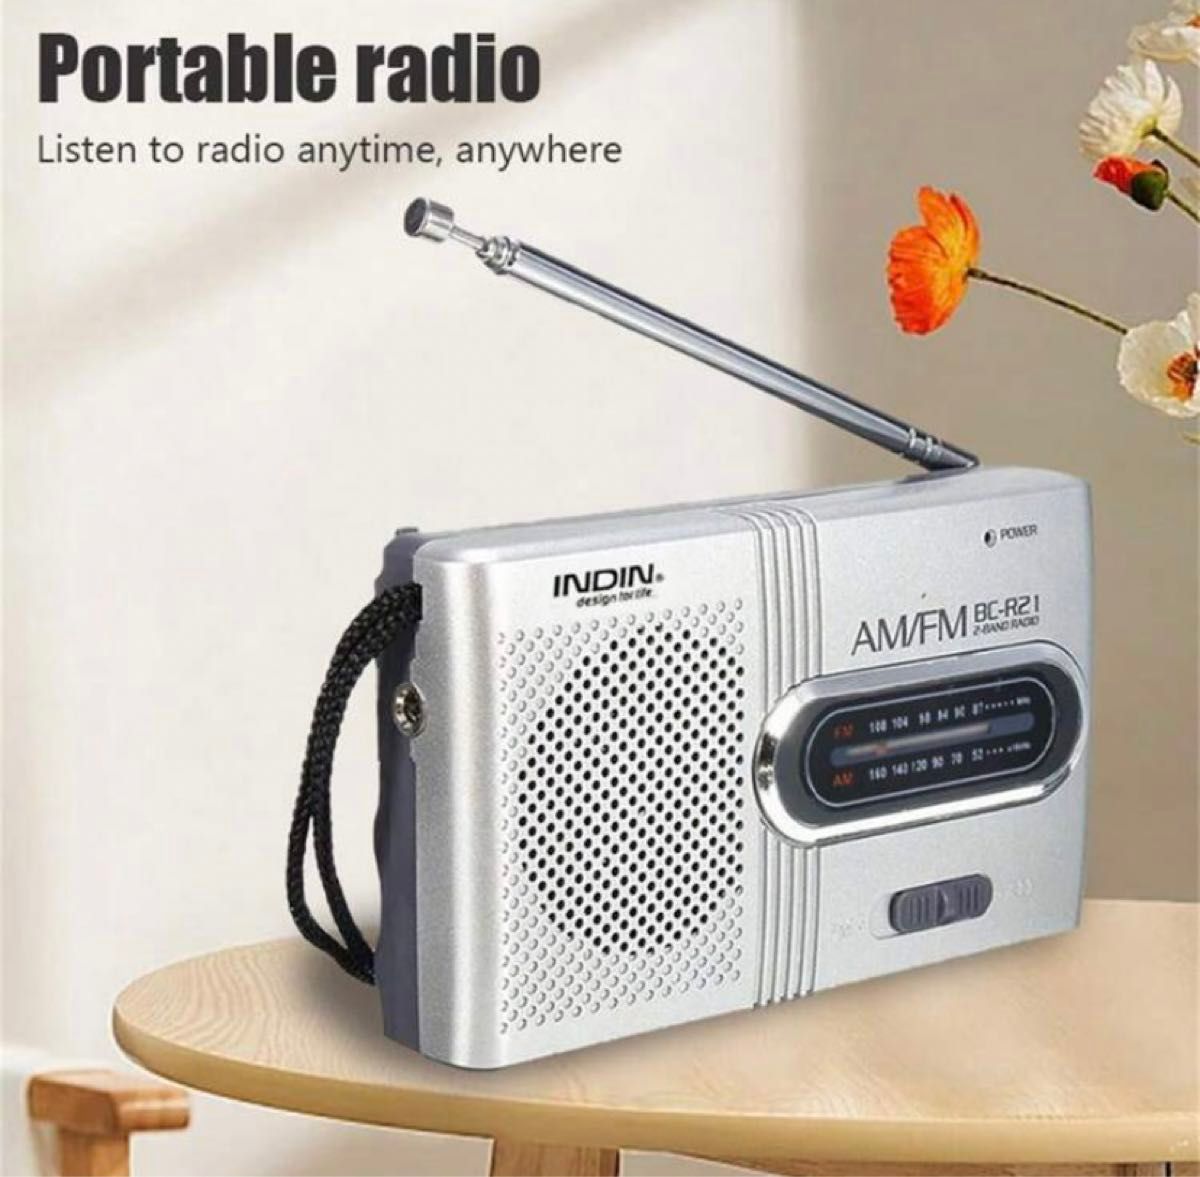 ミニラジオ、軽量フルレンジレシーバープラスチックAM FMラジオスクロールノブ調整屋外用 (BC-R21)